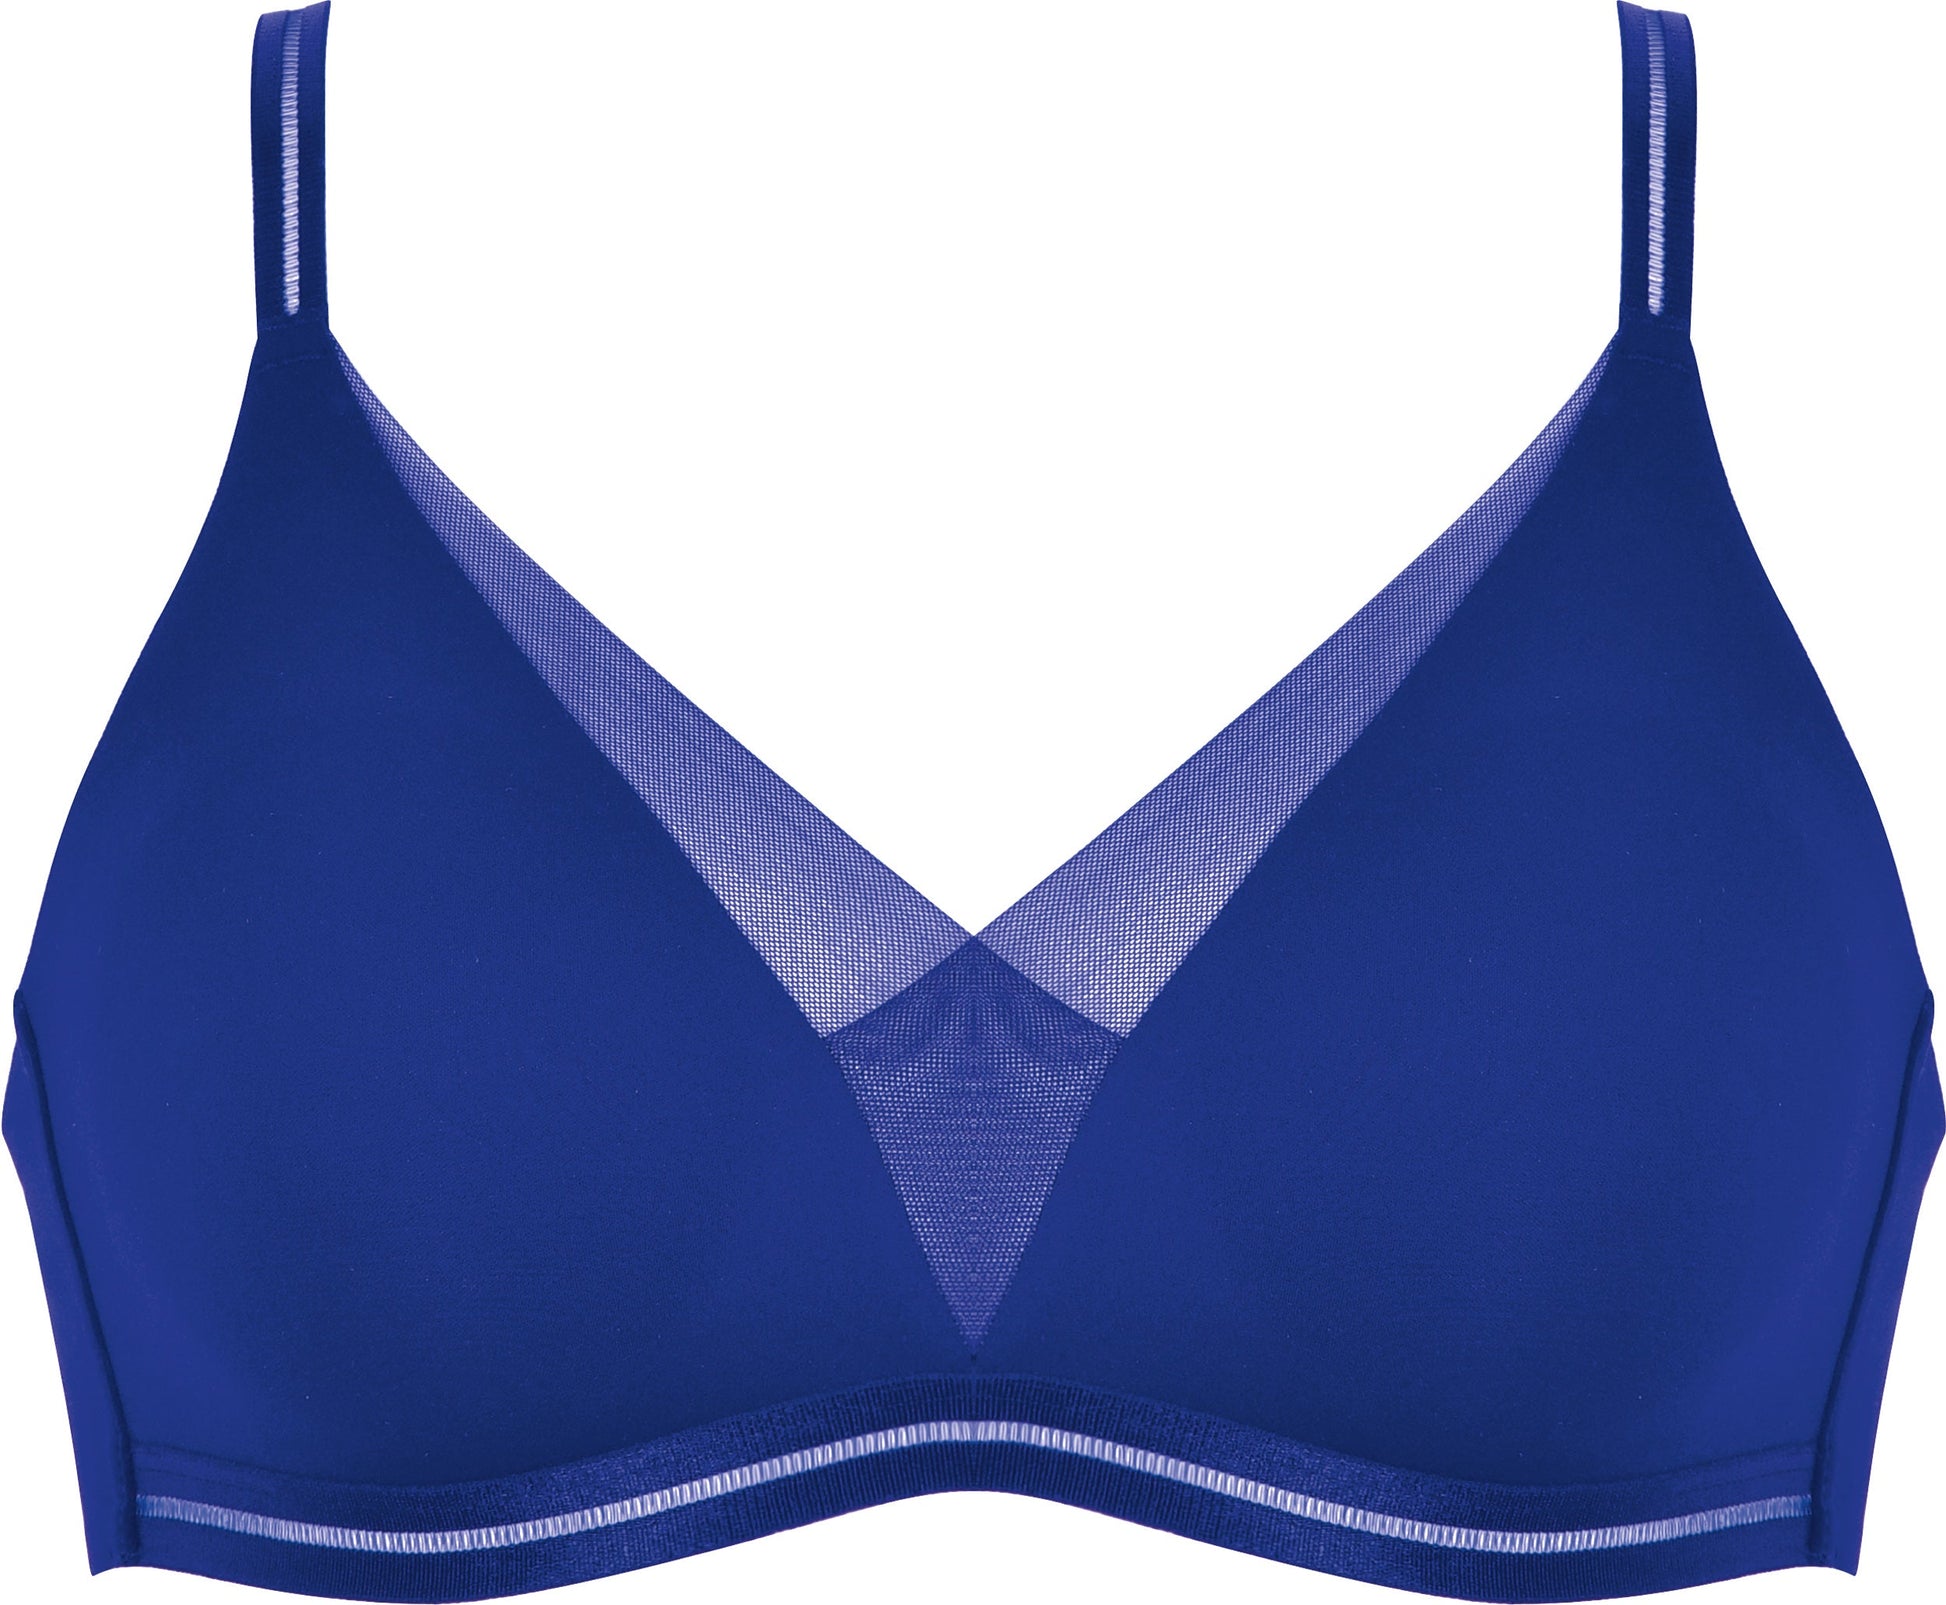 Voorzijde productafbeelding soft bh met mesh detail in de kleur indigo van het merk Naturana